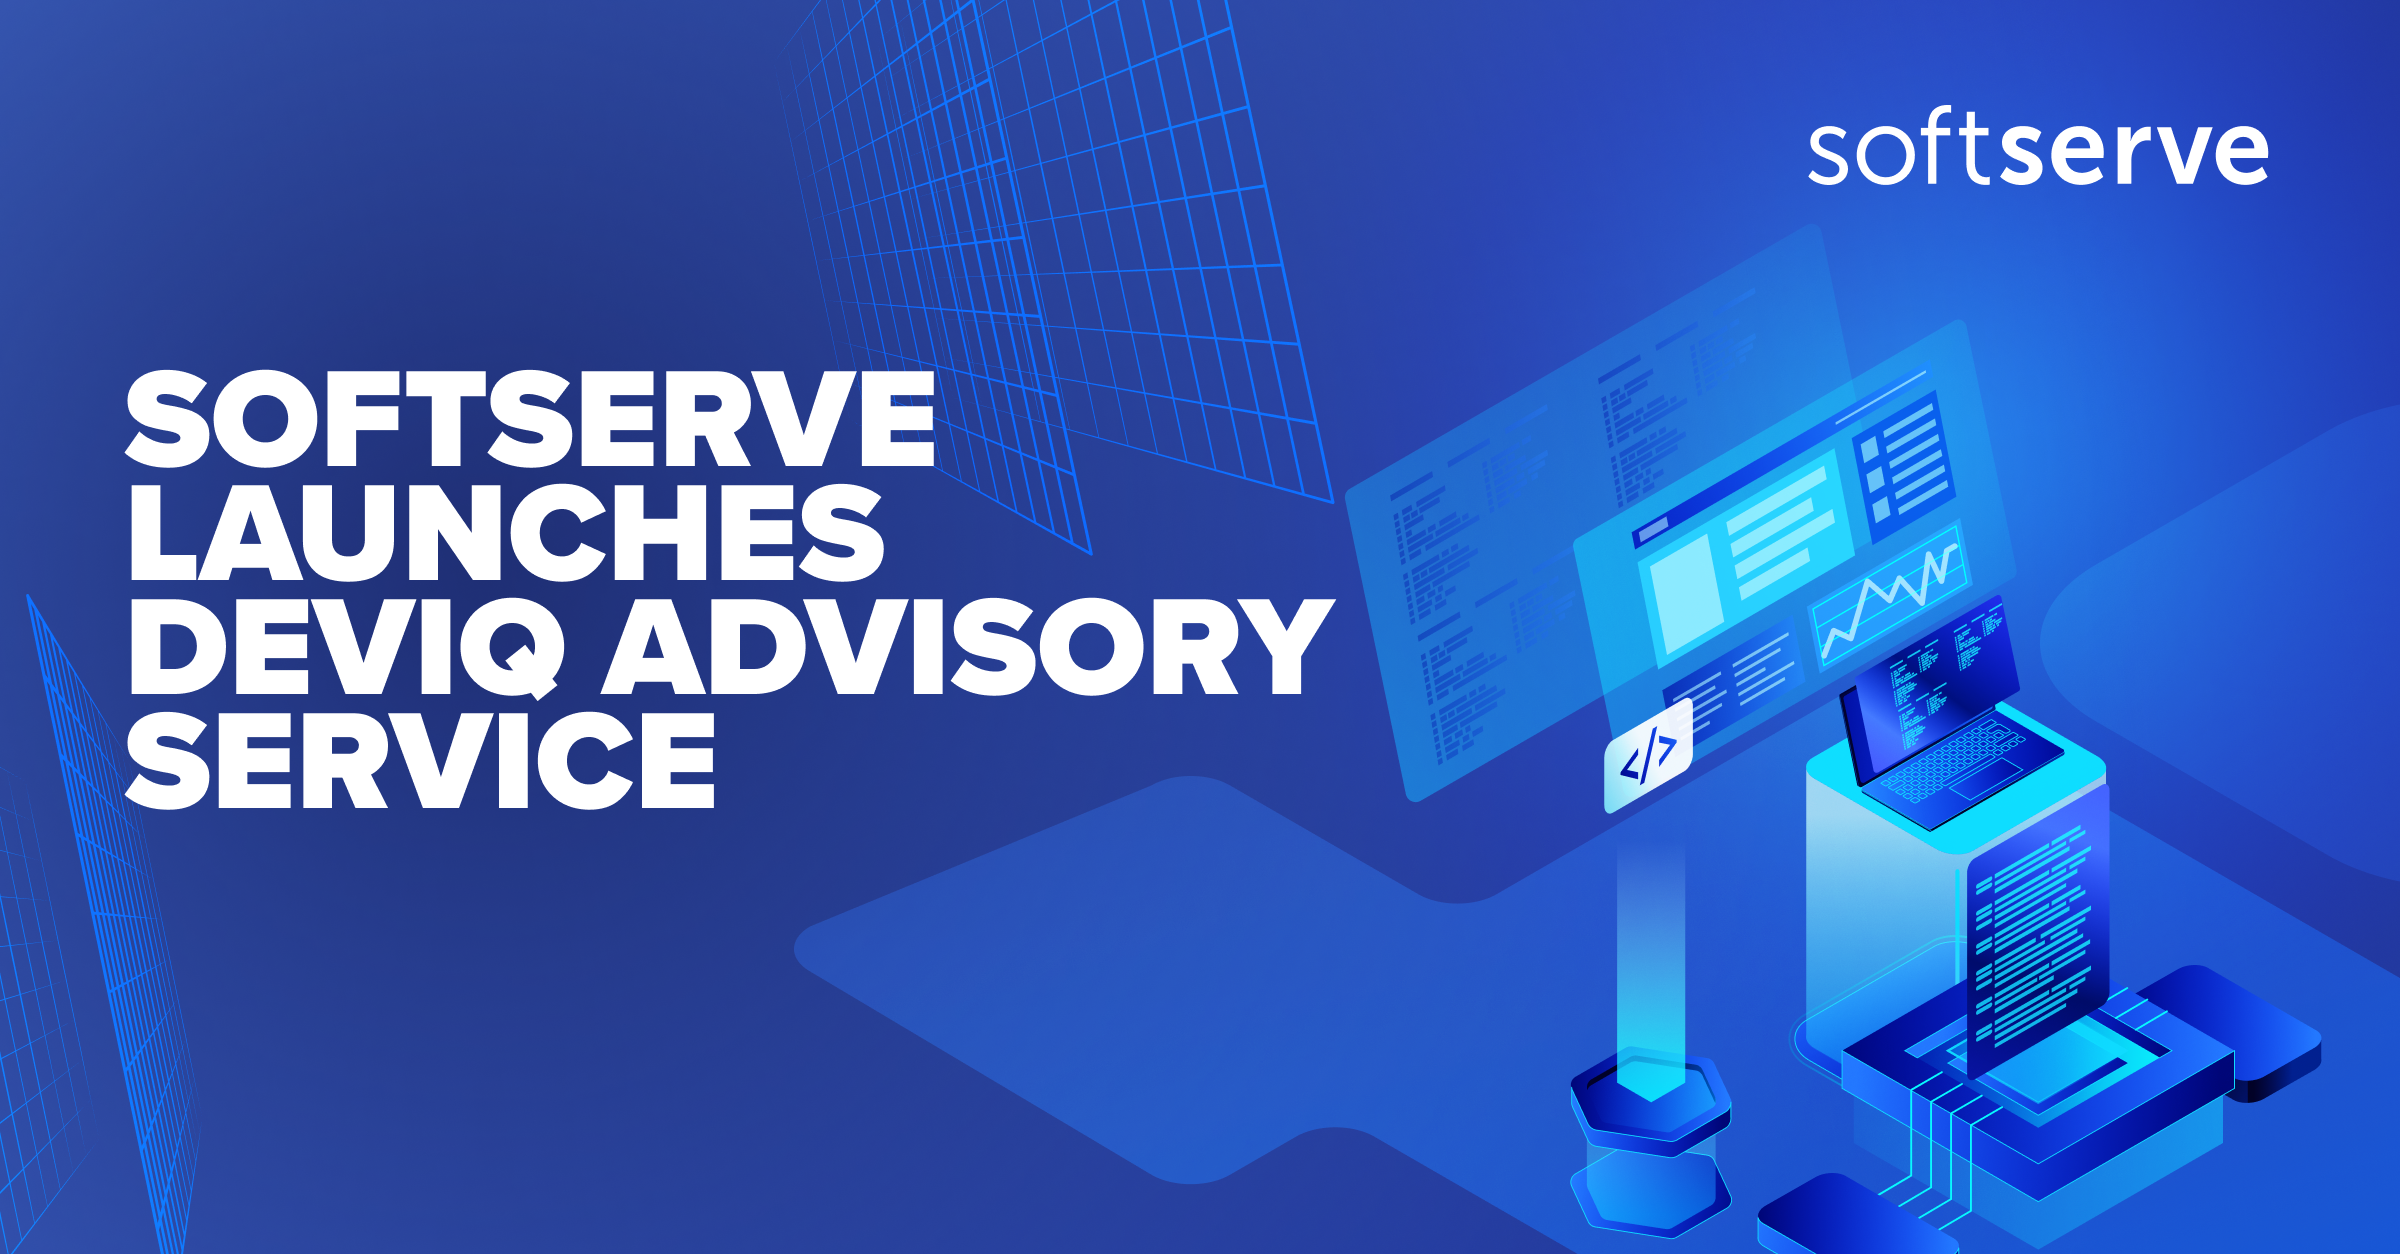 softserve-launches-deviq-advisory-service-social